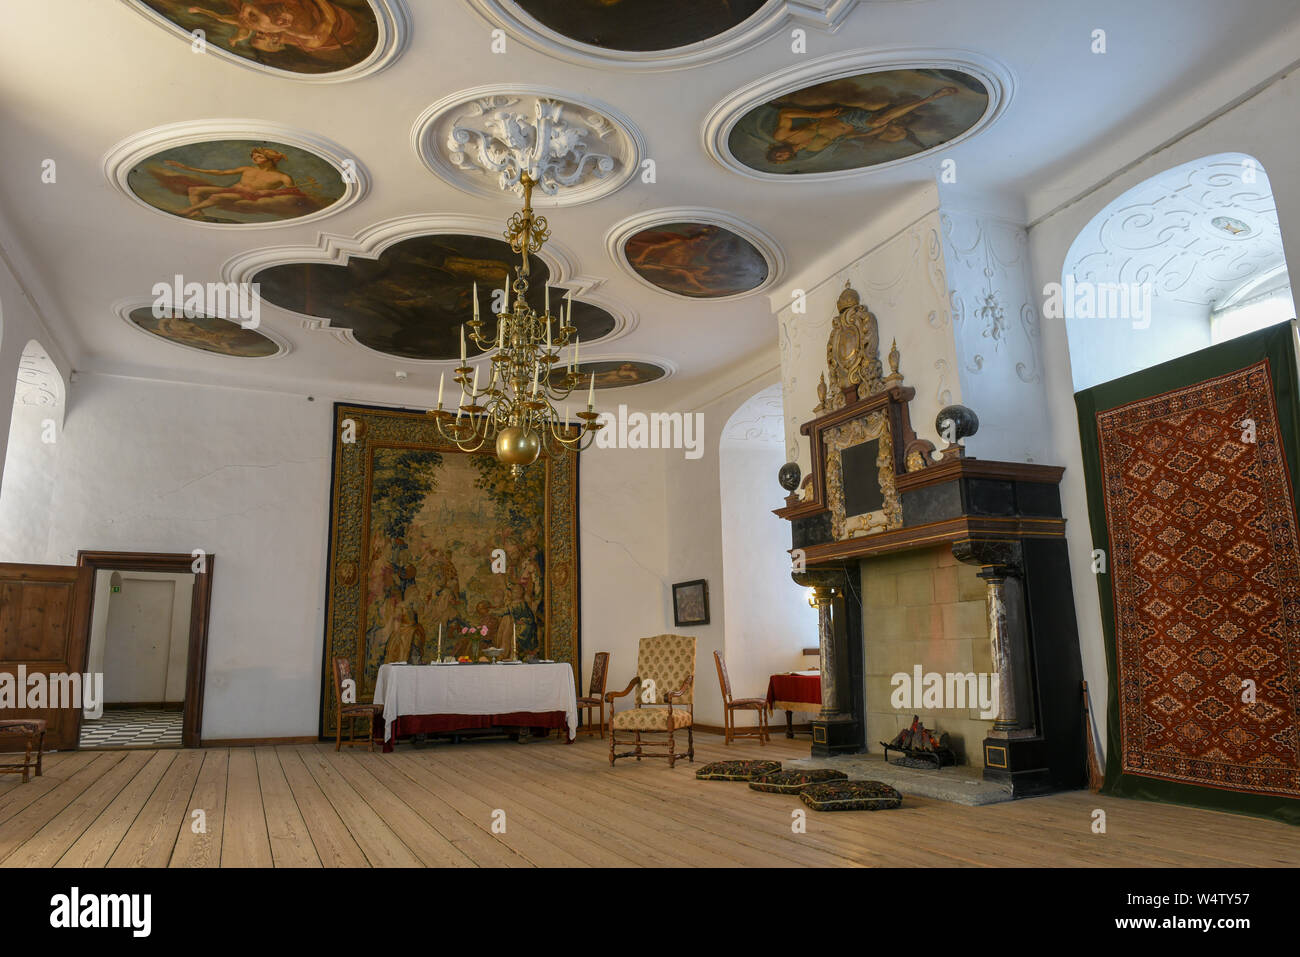 Helsingor, Denmark - 28 June 2019: interiors of Kronborg castle at Helsingor on Denmark Stock Photo